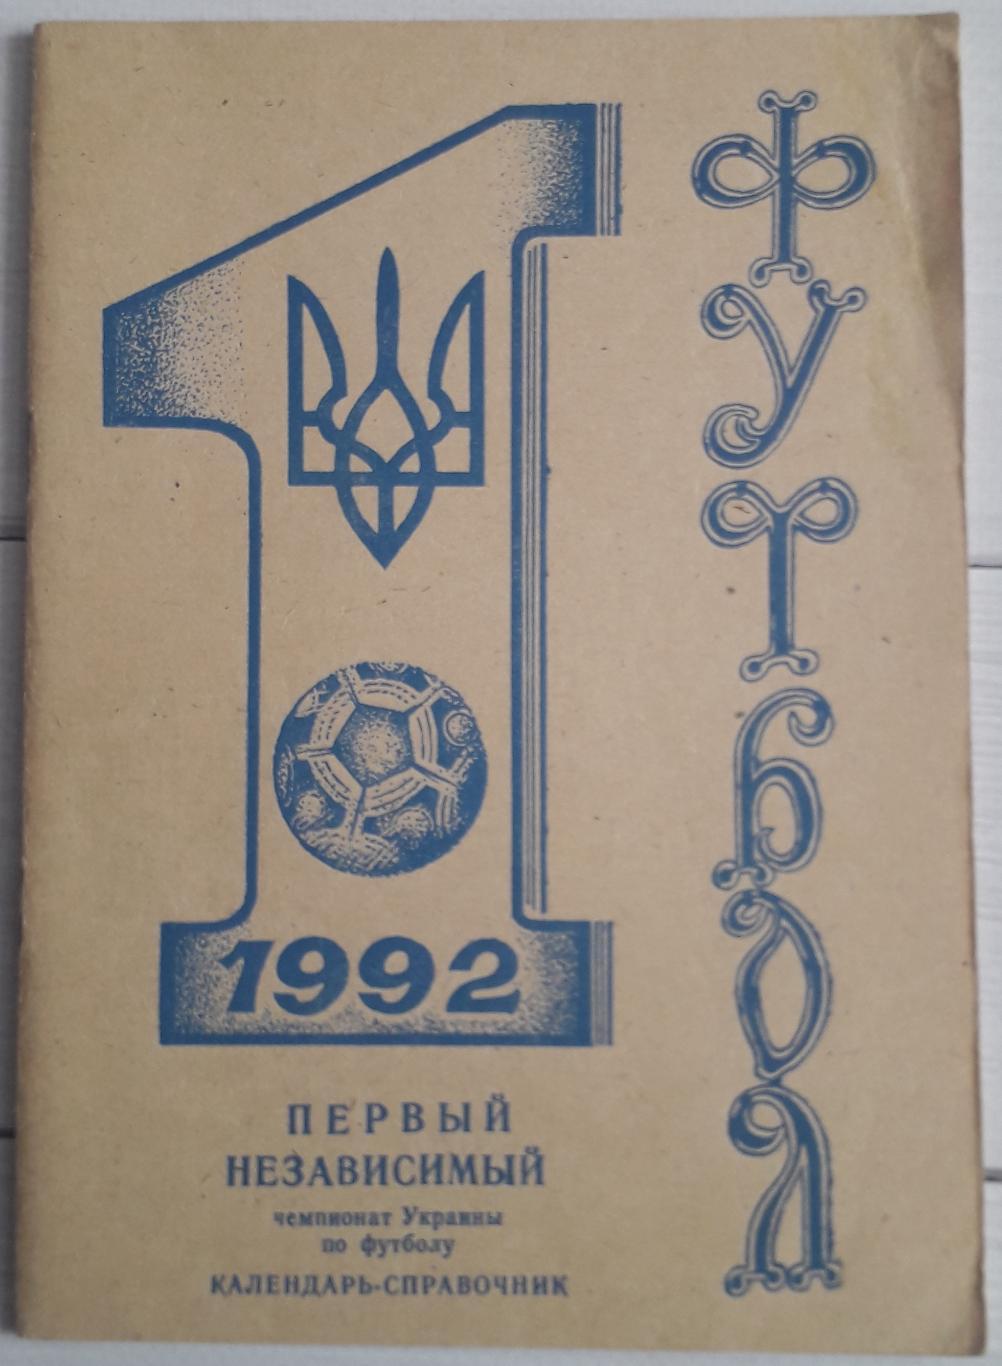 Календарь-справочник. Никополь 1992